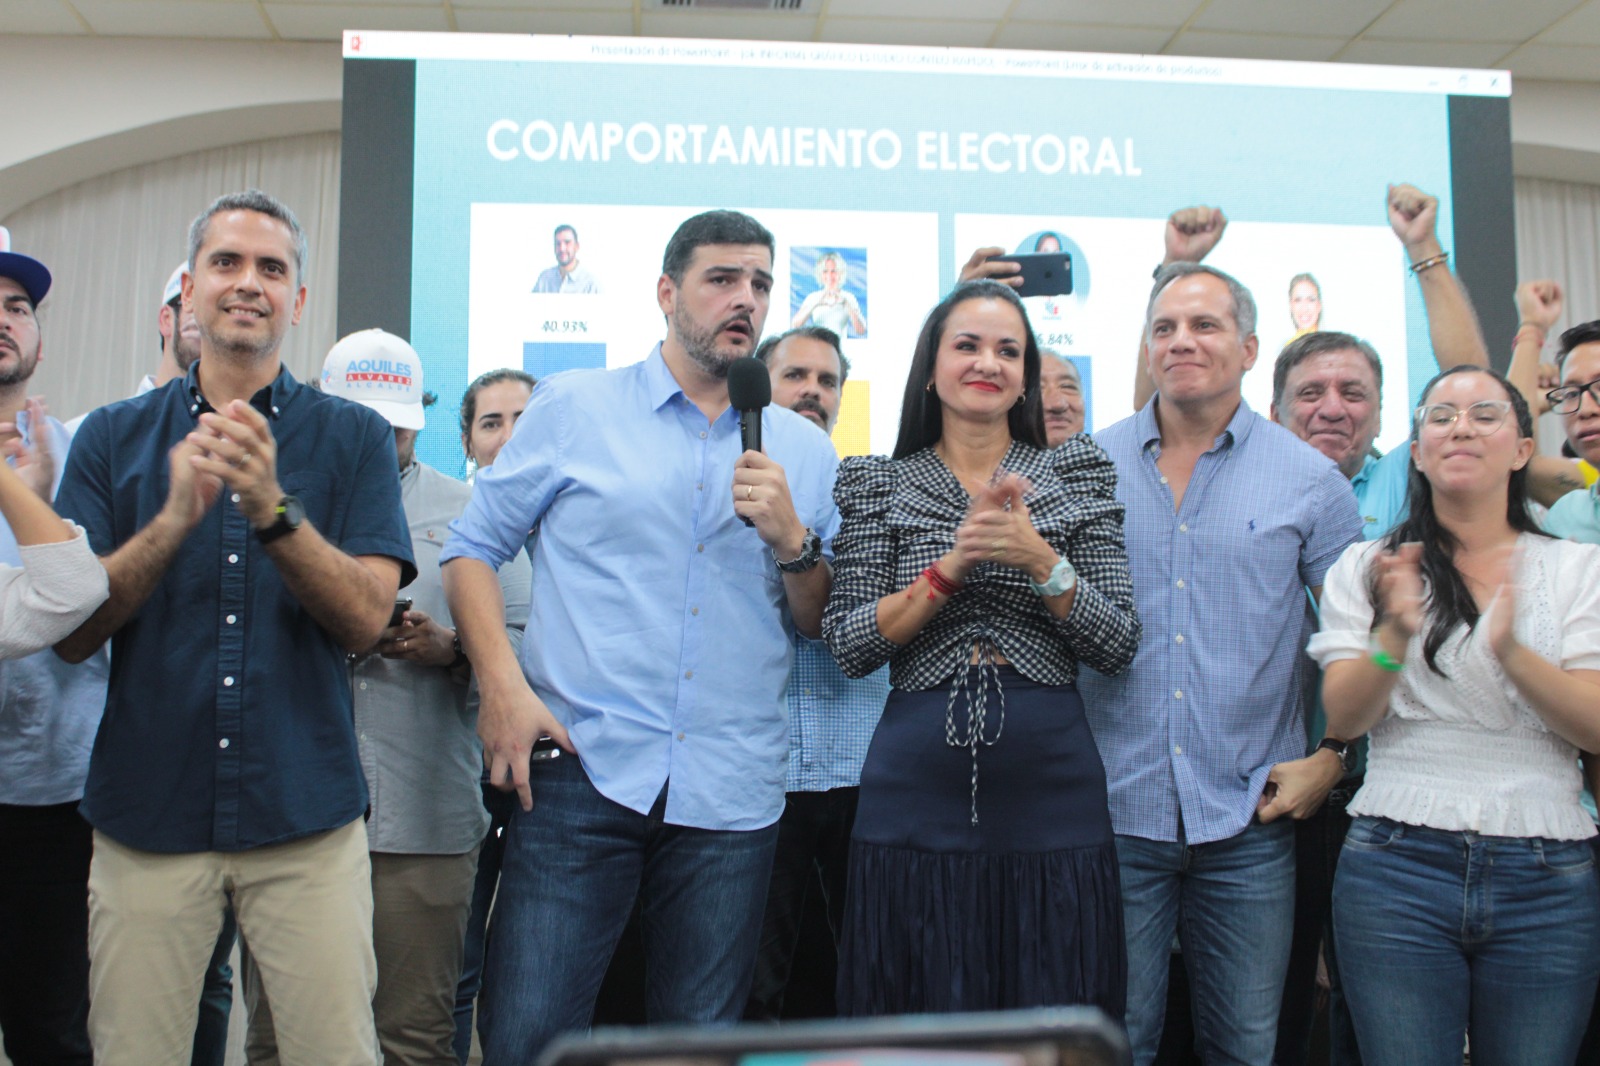 Jorge Aicaiturri candidato del Partido Social Cristiano (PSC) reconoció la derrota de su partido en manos de Aquiles Álvarez y Marcela Aguñaga. Foto Cortesía